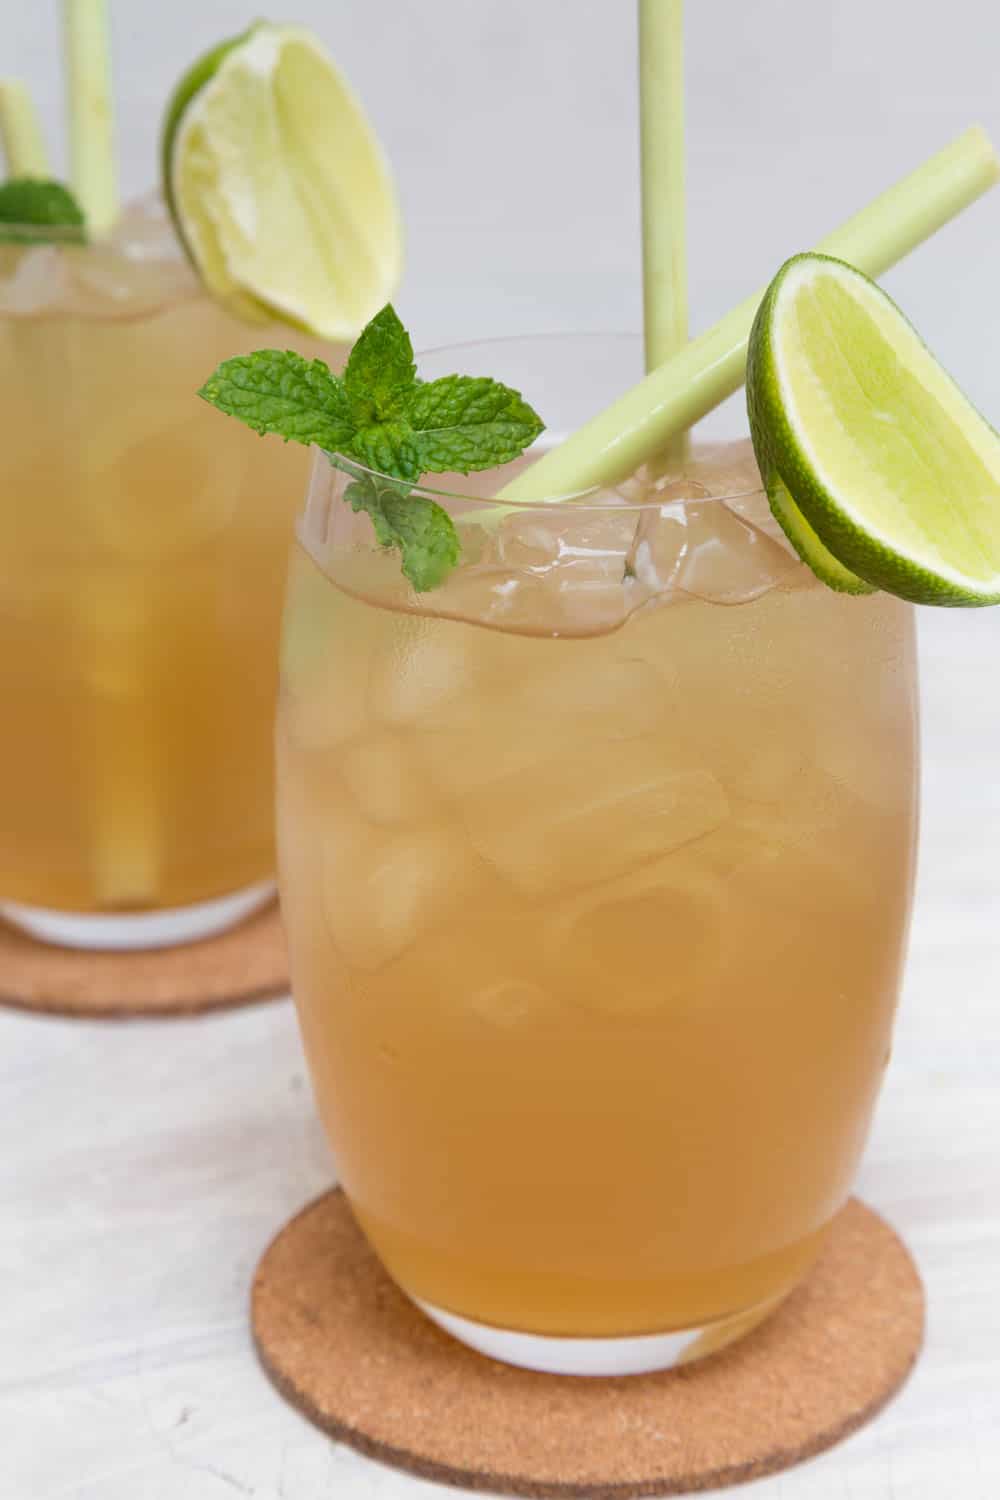 Lemongrass Tea Recipe